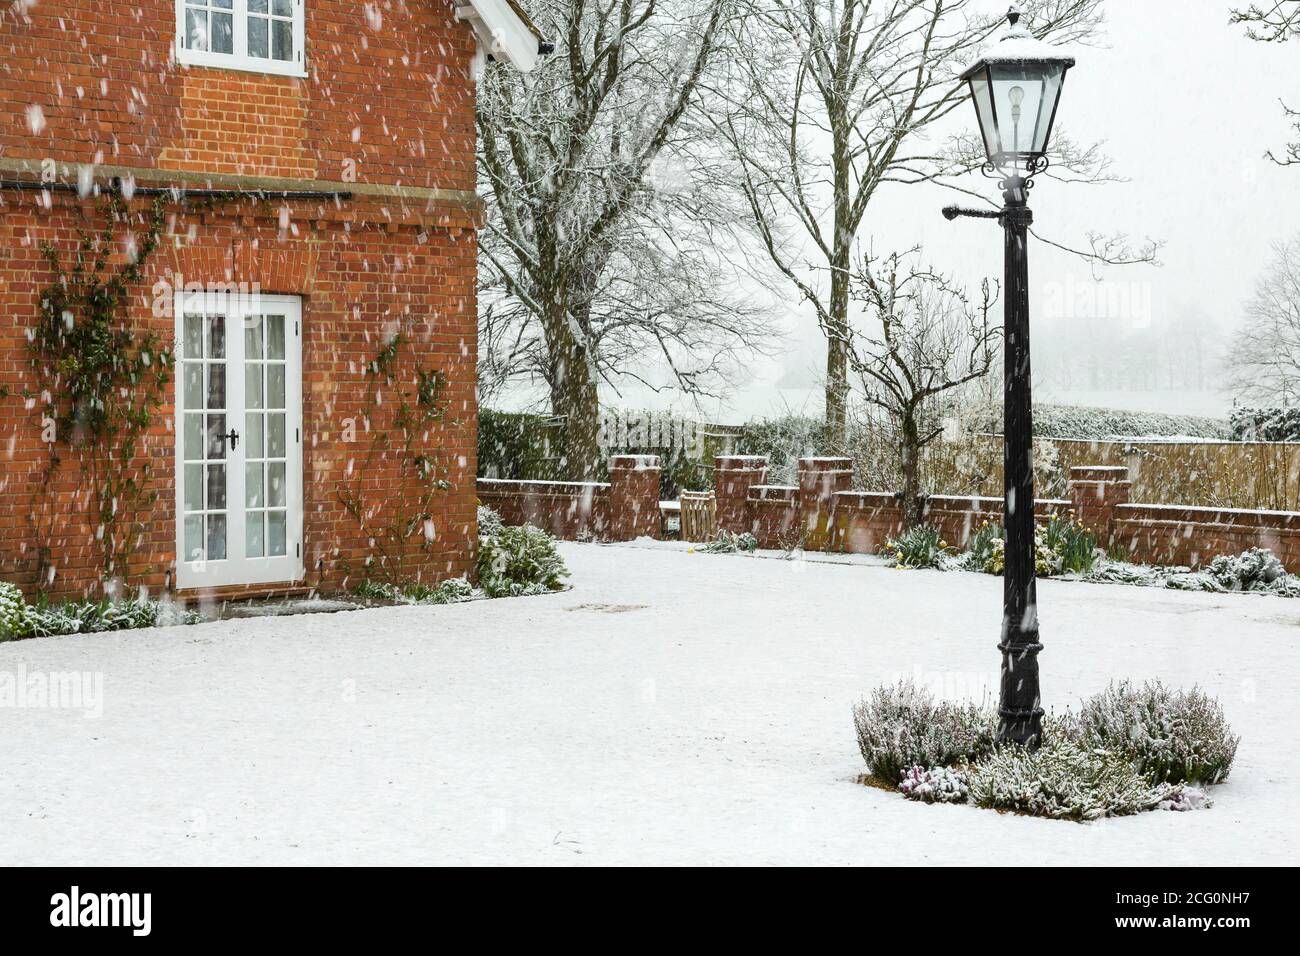 Jardin anglais d'une maison de campagne dans la neige d'hiver, Royaume-Uni Banque D'Images